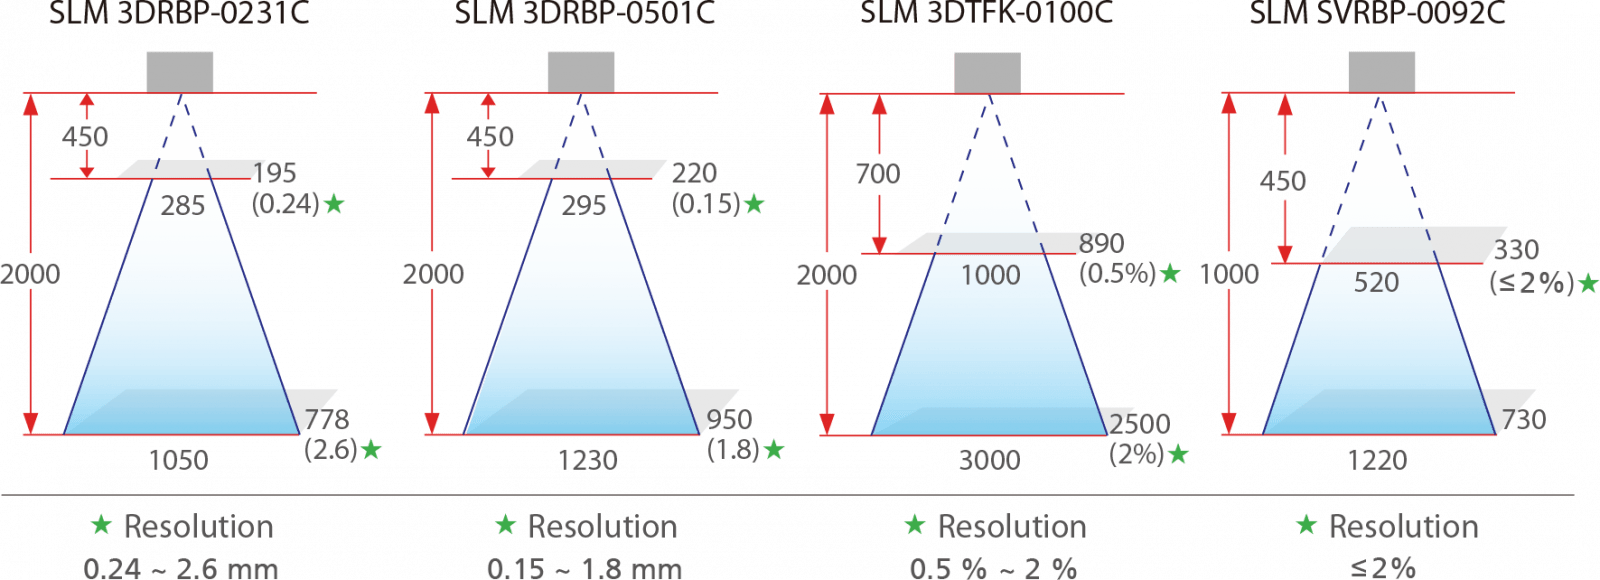 infographic showing 3D scanner Field of View for SLM 3DRBP-0231C, SLM 3DRBP-0501C, SLM 3DTFK-0100C, and SLM SVRBP-0092C